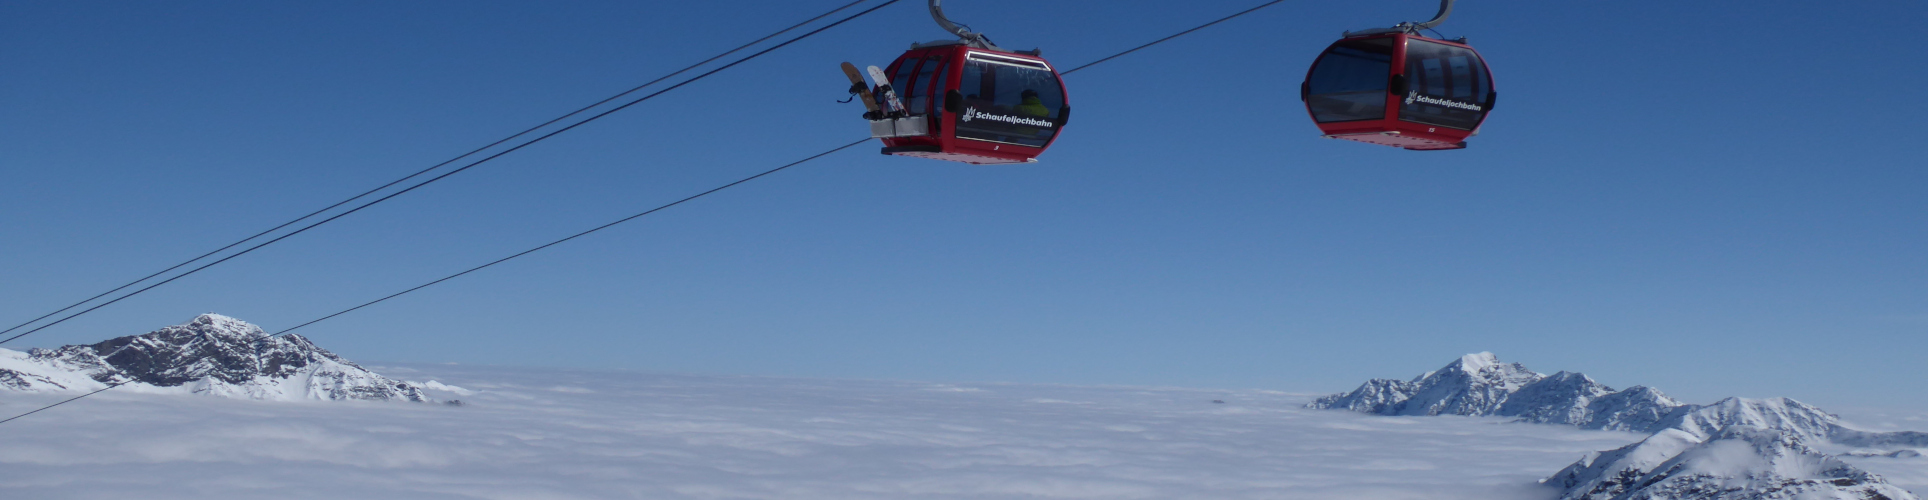 STUBAIER GLETSCHER – Skiwochenende – mit absoluter Schneegarantie – ab Freitag Früh 